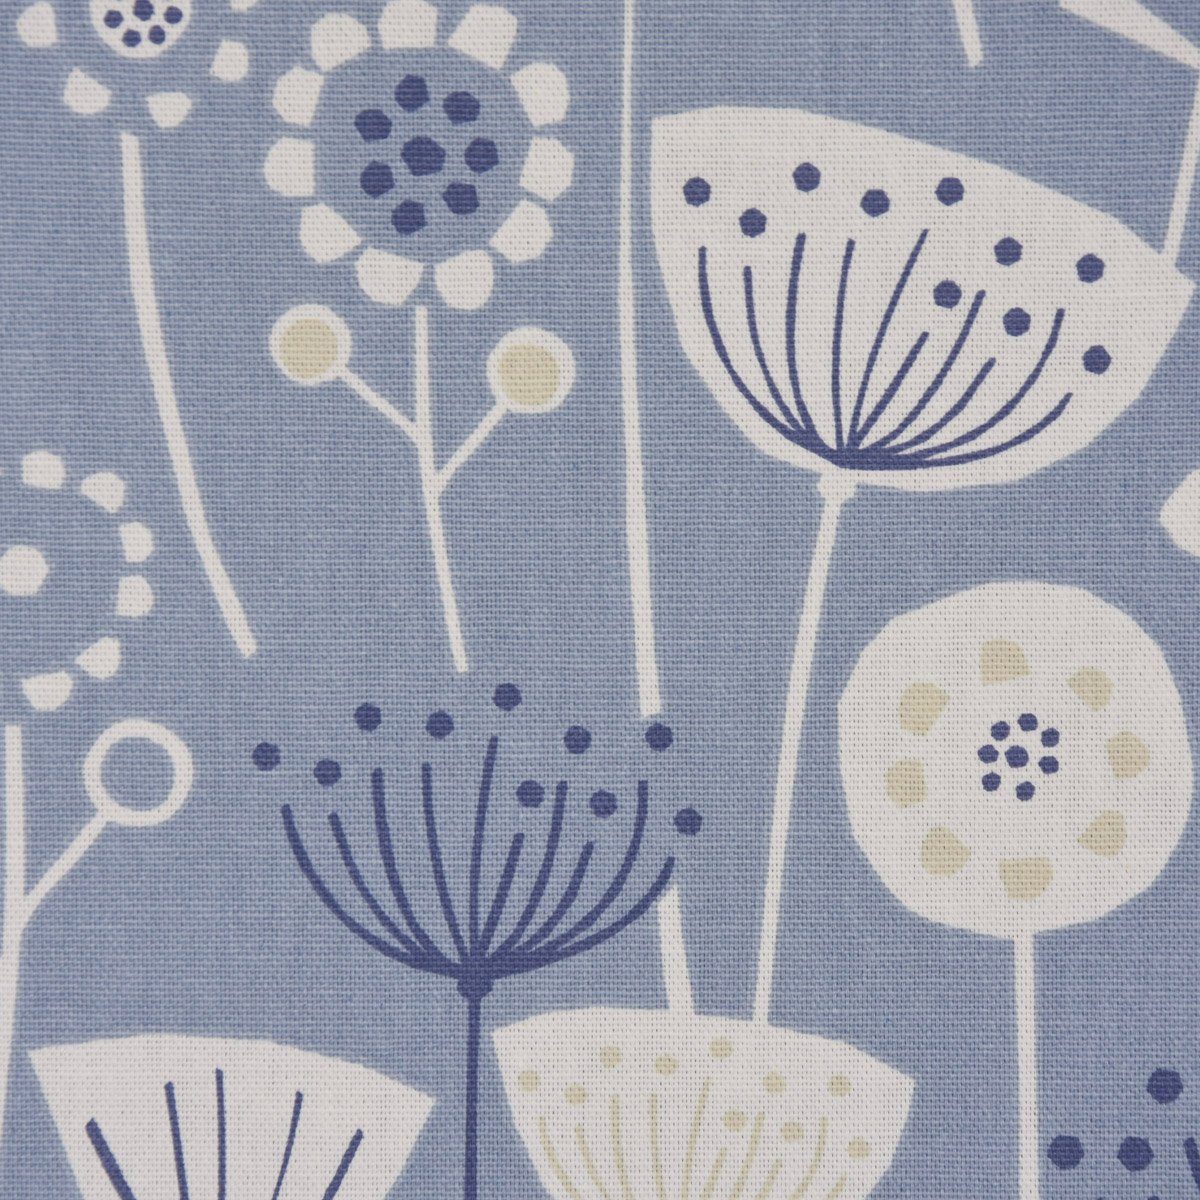 LEBEN. LEBEN. SCHÖNER SCHÖNER abstrakt Tischläufer blau, handmade Tischläufer Fryett`s Blumen Halbpanama